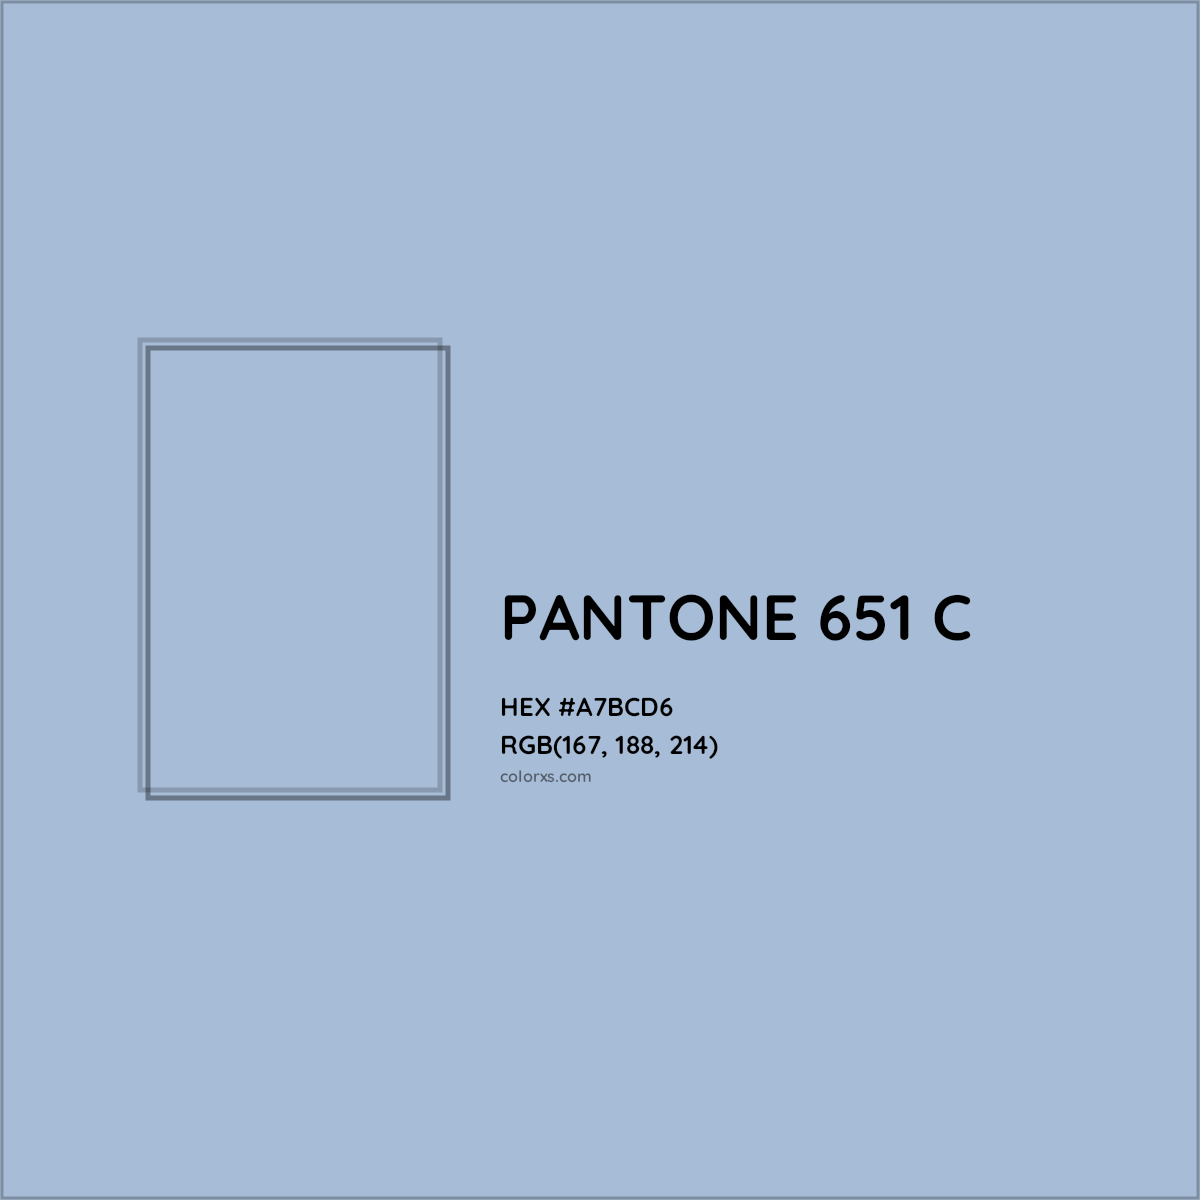 HEX #A7BCD6 PANTONE 651 C CMS Pantone PMS - Color Code